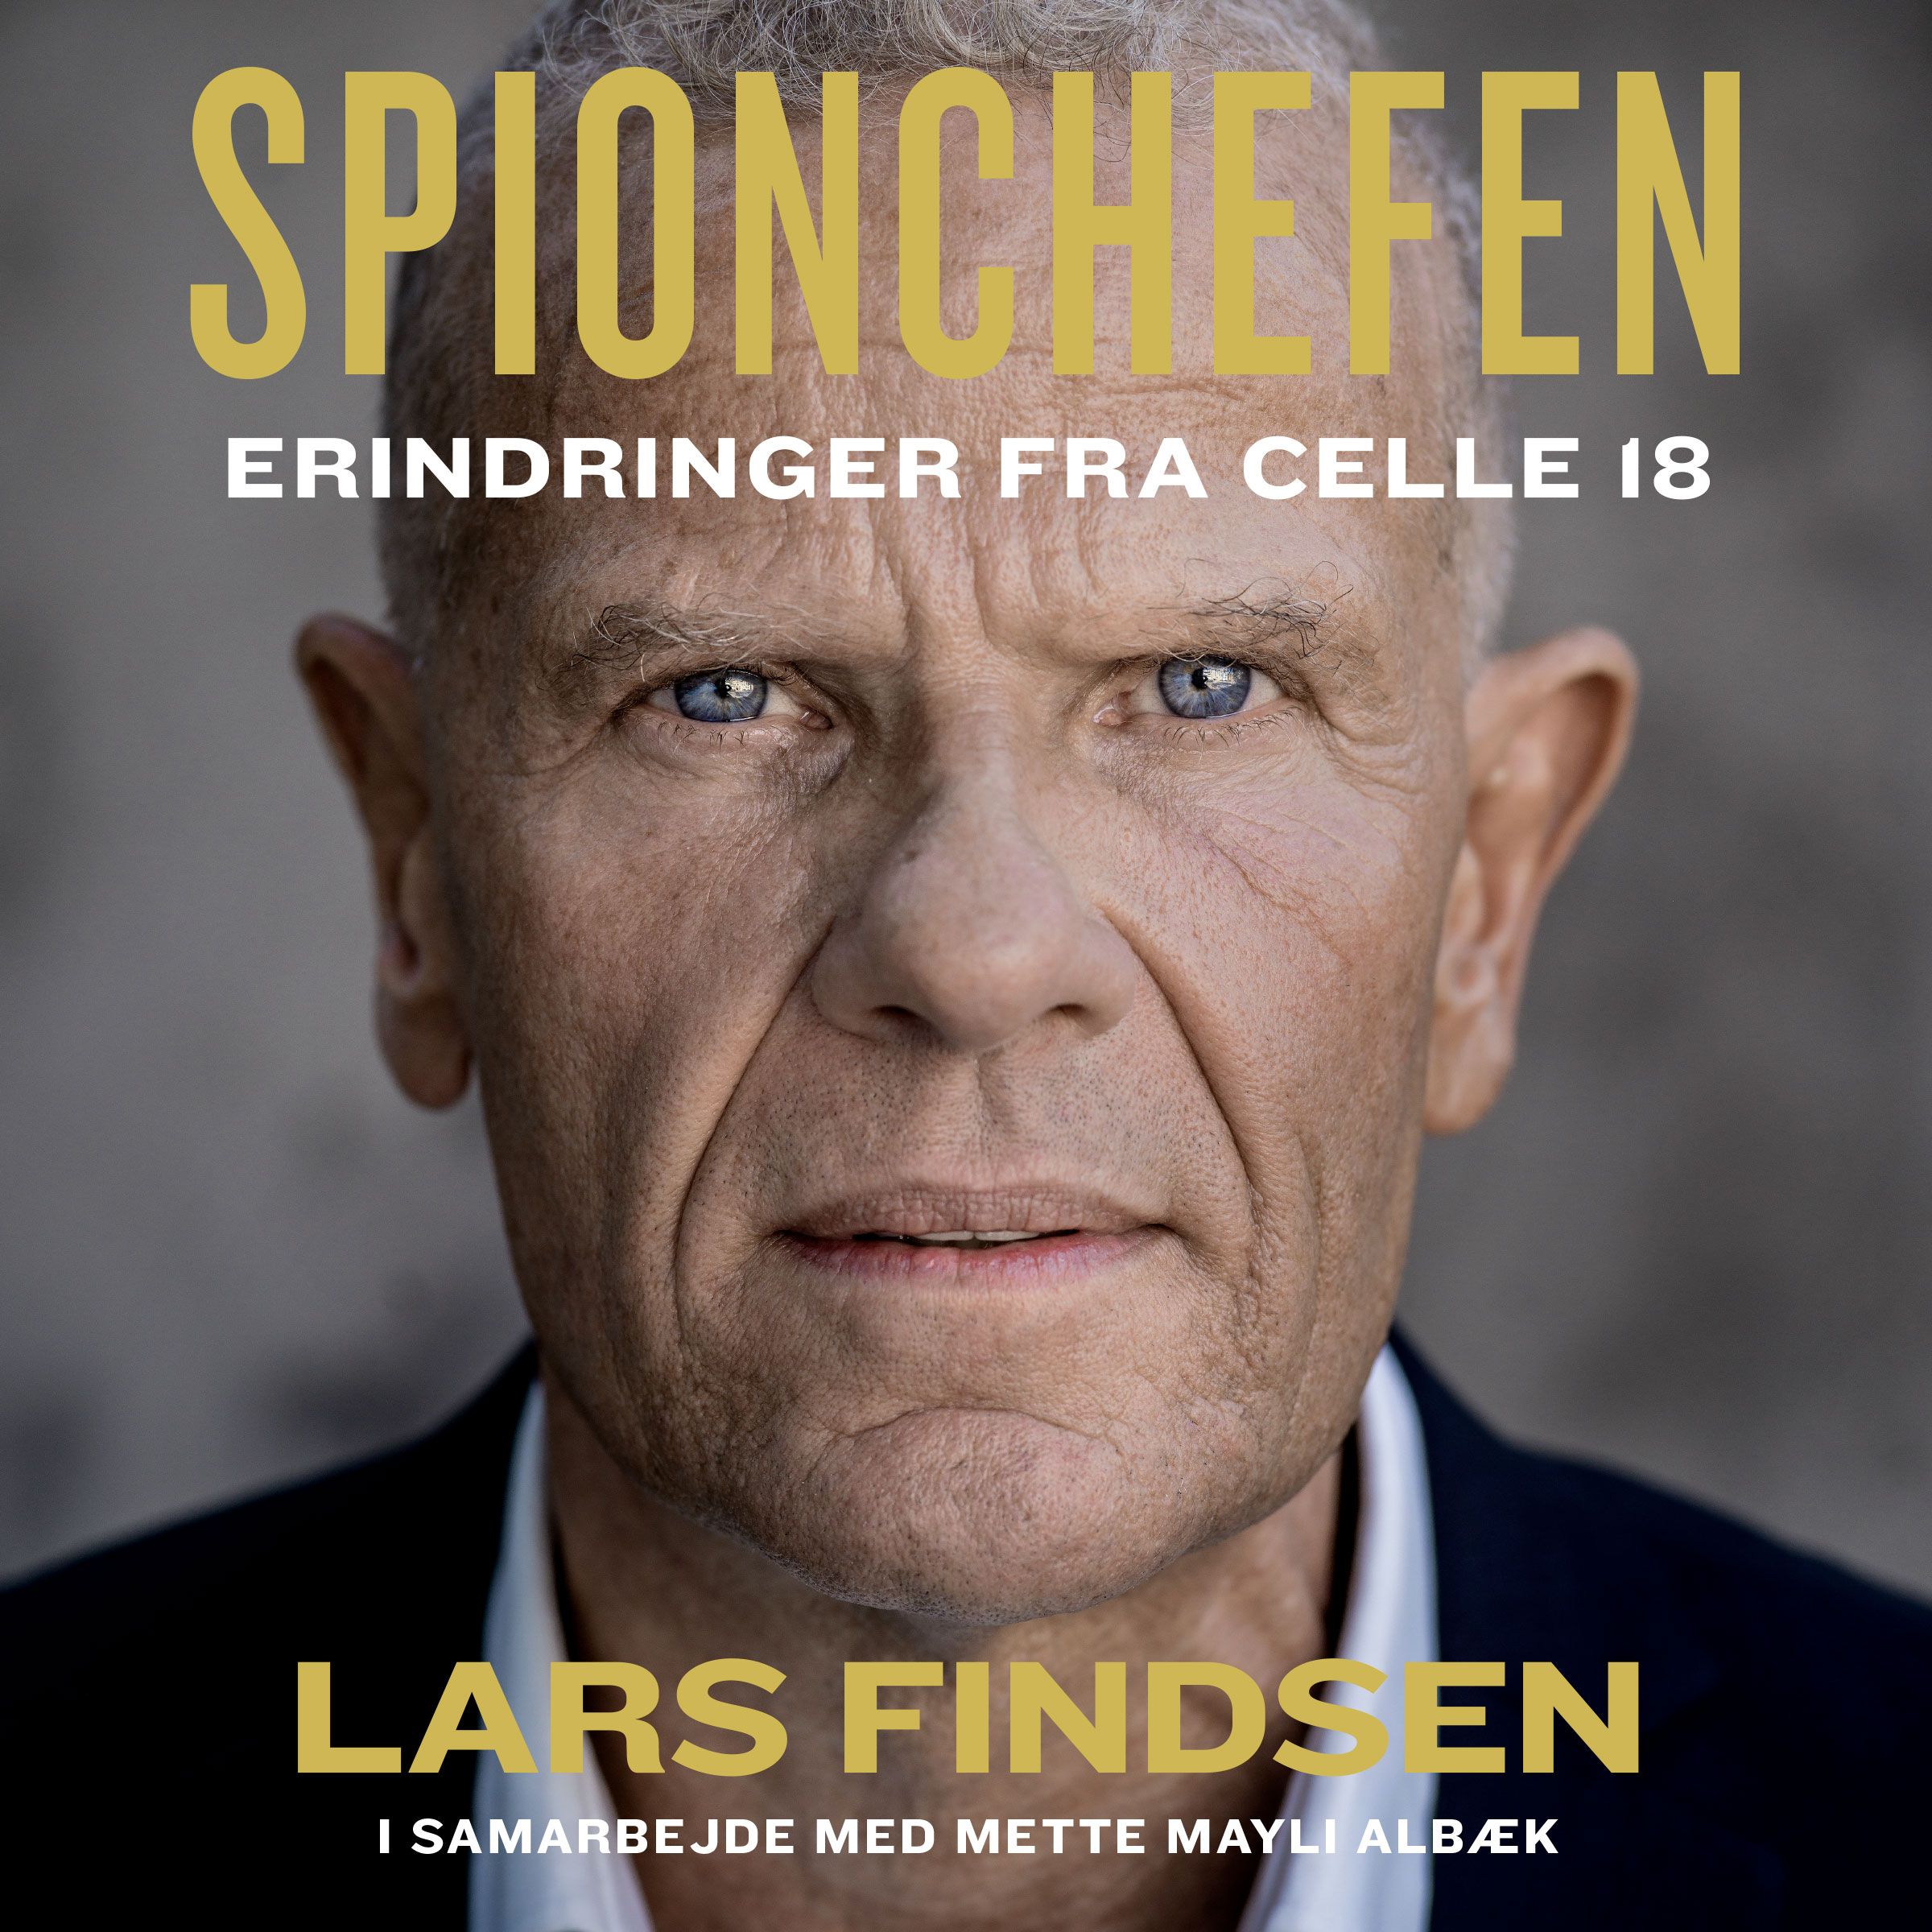 Spionchefen, lydbog af Mette Mayli Albæk, Lars Findsen